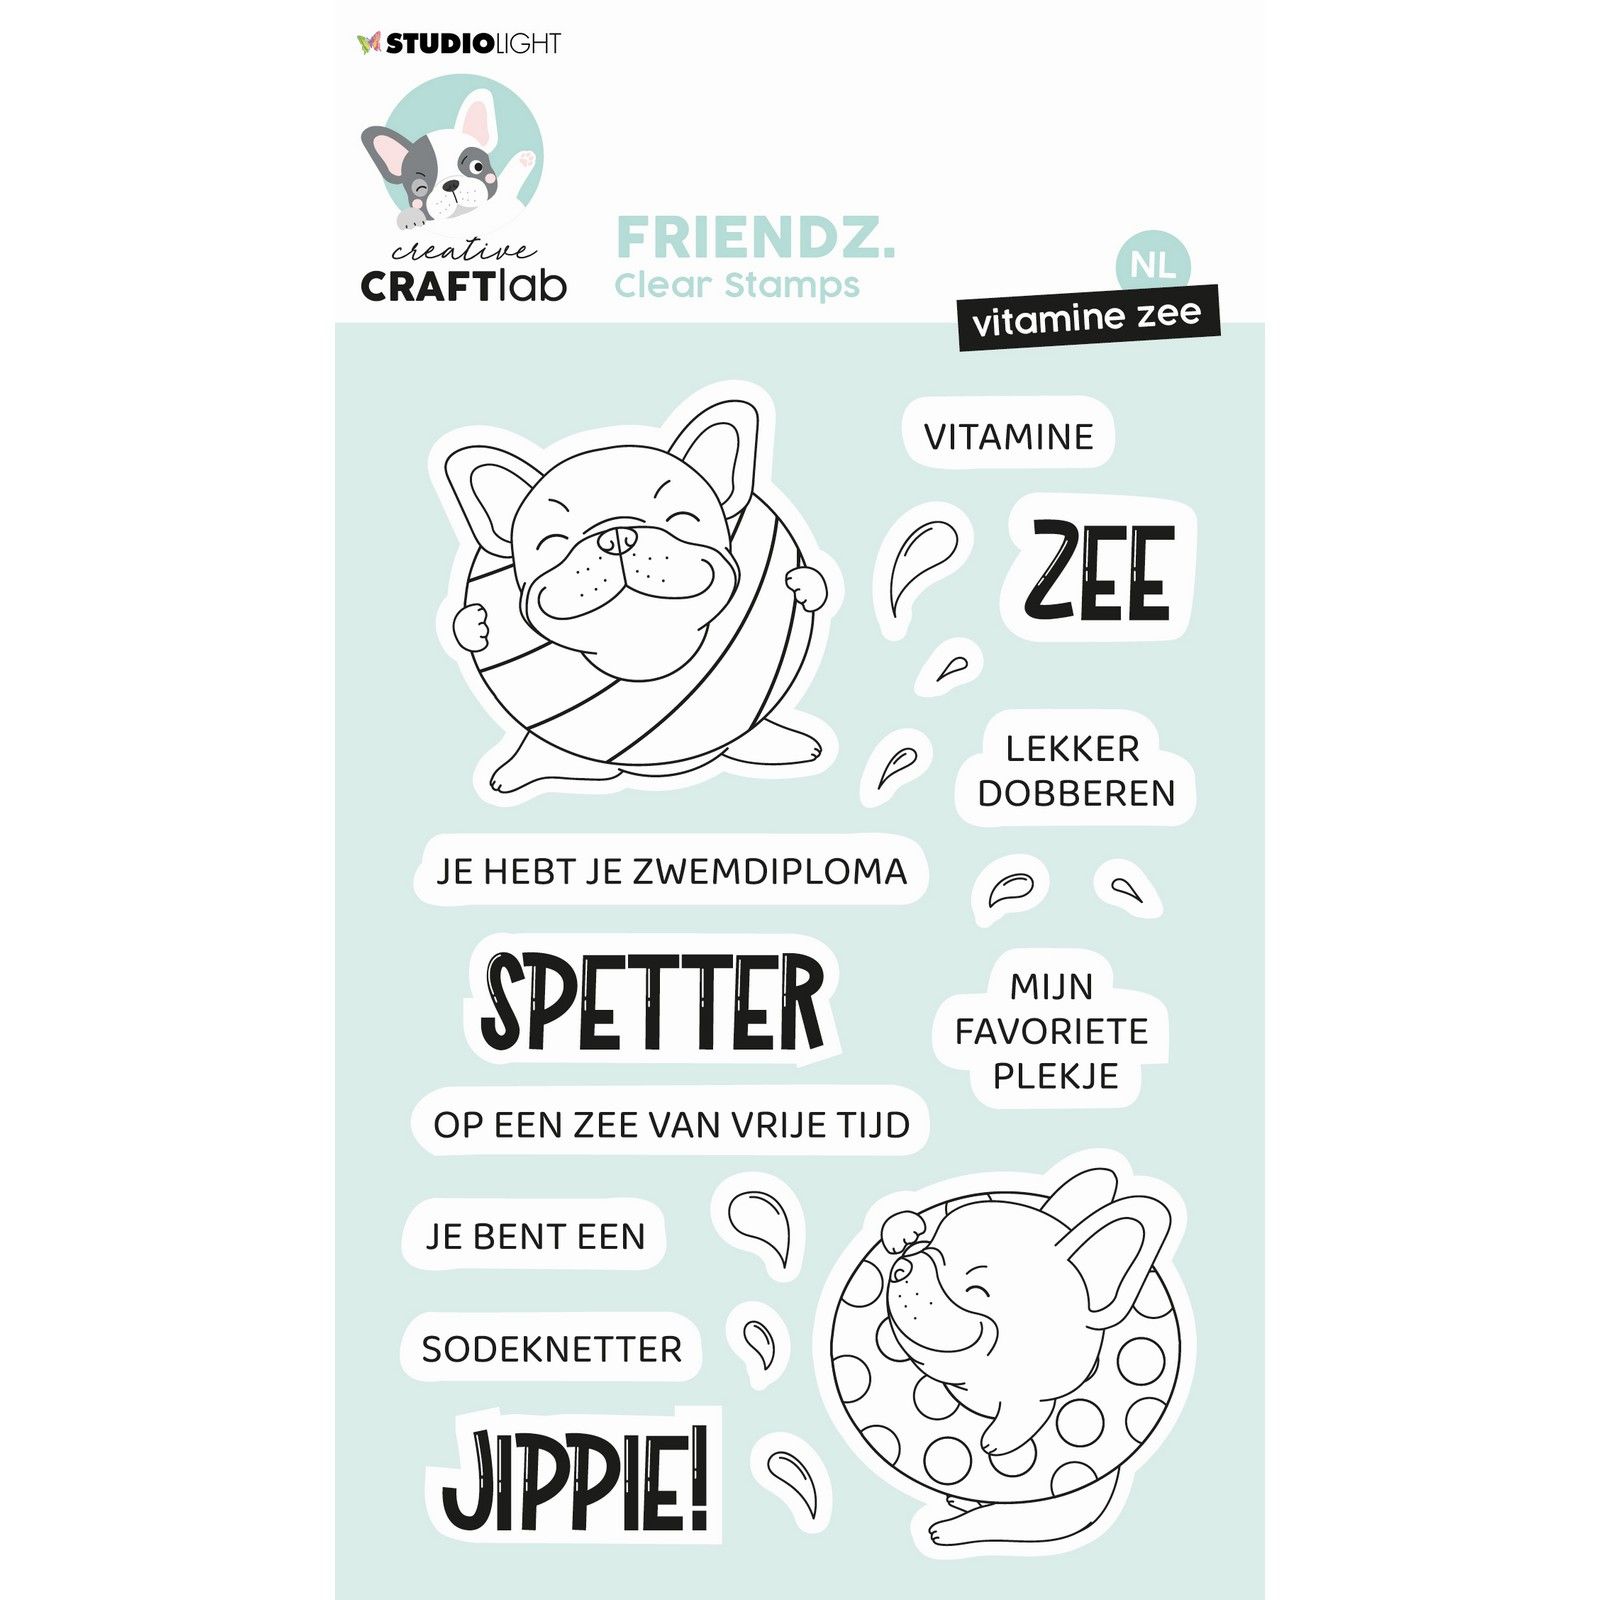 Creative Craftlab • Friendz Clear Stamp Vitamine Zee